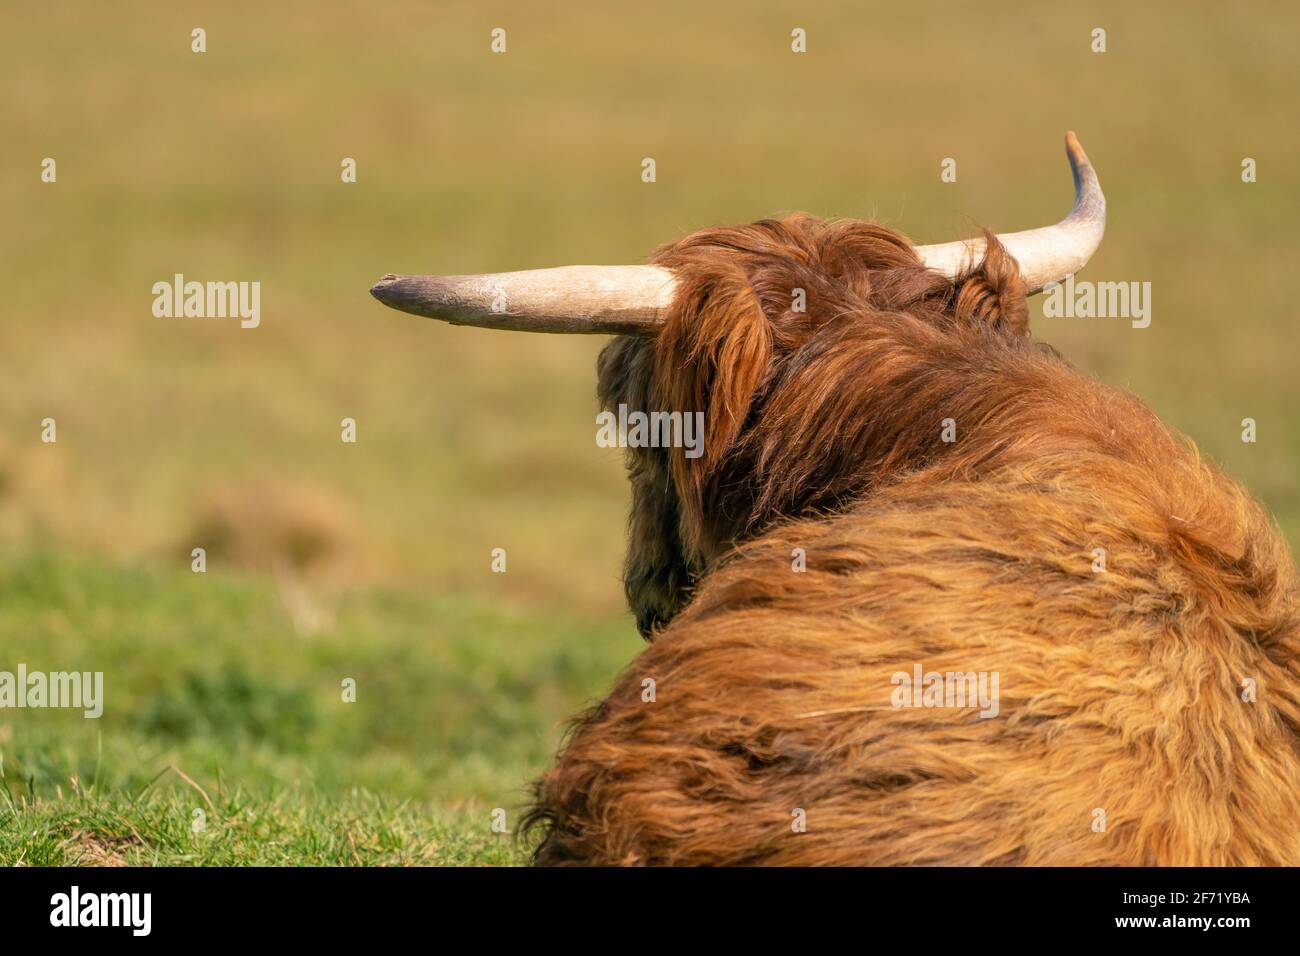 Scottish Highlander se encuentra en la hierba, en la luz del sol. La vaca tiene grandes cuernos, vistos desde atrás. Una reserva natural en los países Bajos Foto de stock